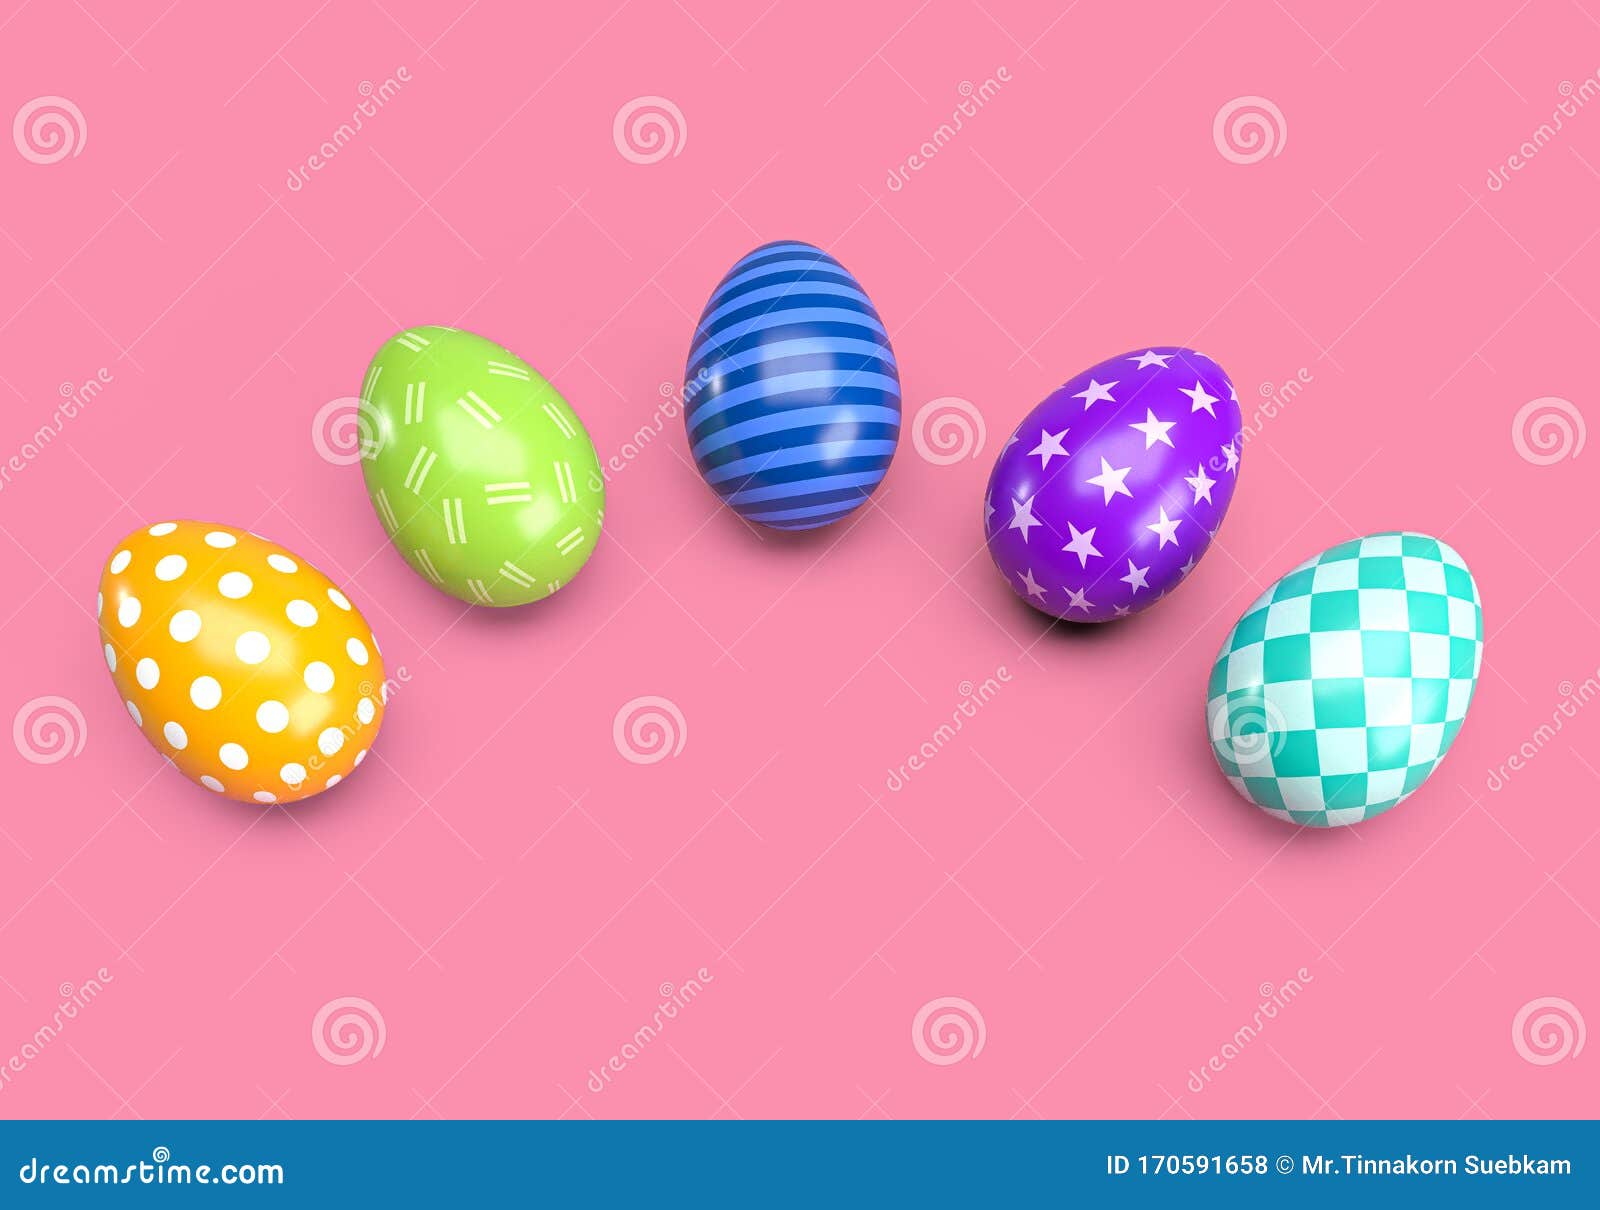 Representación 3d De Dibujos Animados De Decorados Con Colores Huevos De Pascua Para Su Uso En Diseños De Pascua, Sobre Stock de ilustración - Ilustración de iglesia, comedor: 170591658